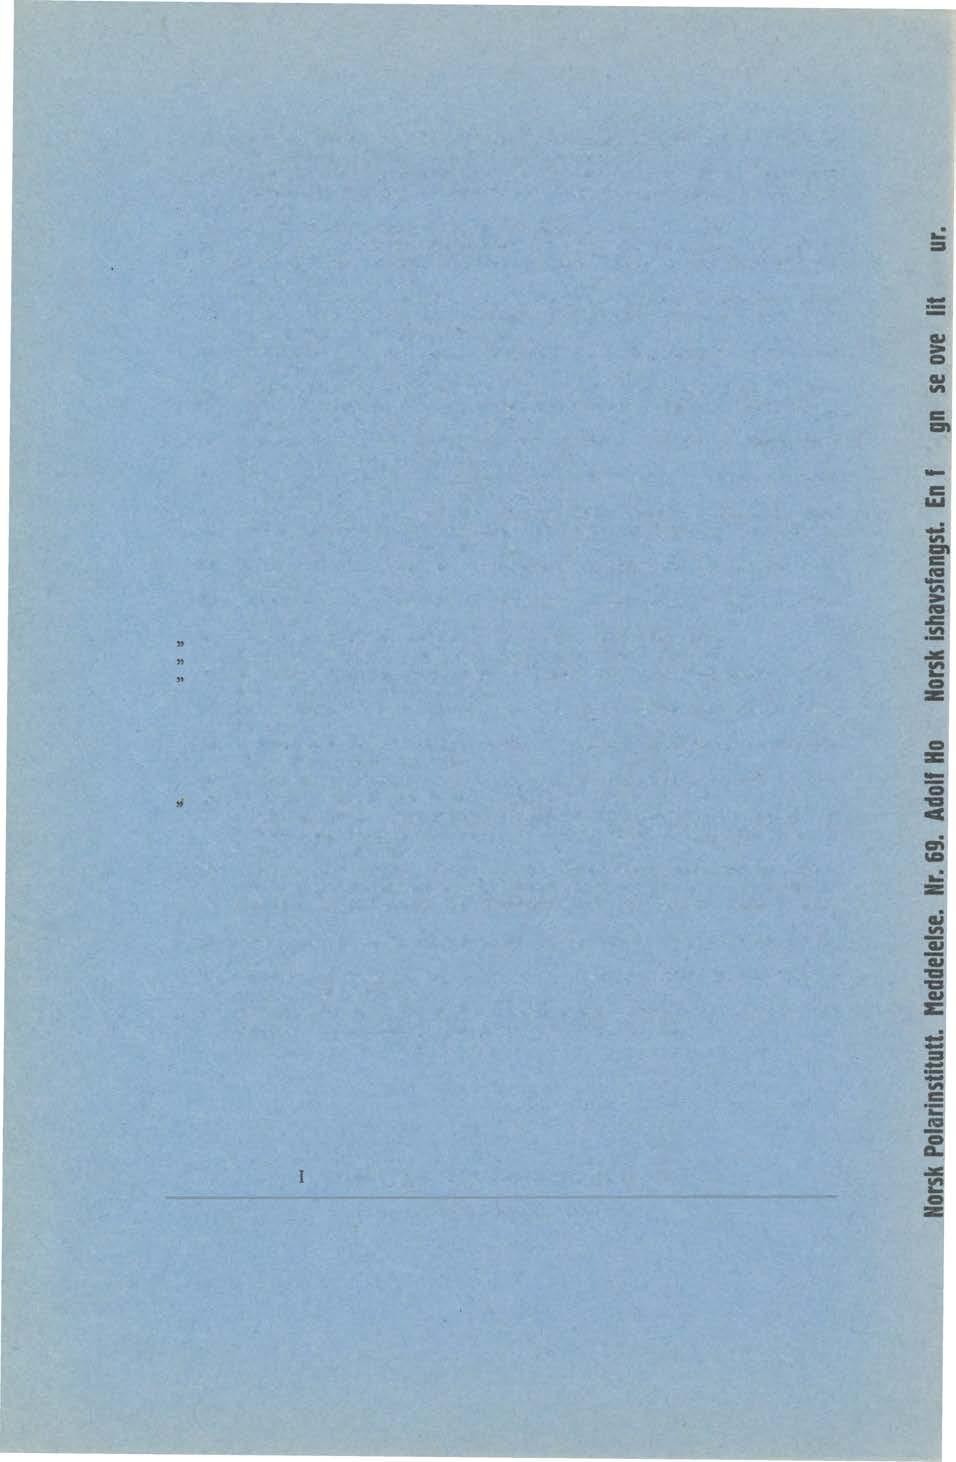 Nr. 46. 0RVIN, ÅNDERS K., The Settlements and Huts of Svalbard. - Særtr. av Norsk Geogr. Tidsskr., b. 7, h. 5-8. 1939. Kr. 1,00. " 47.